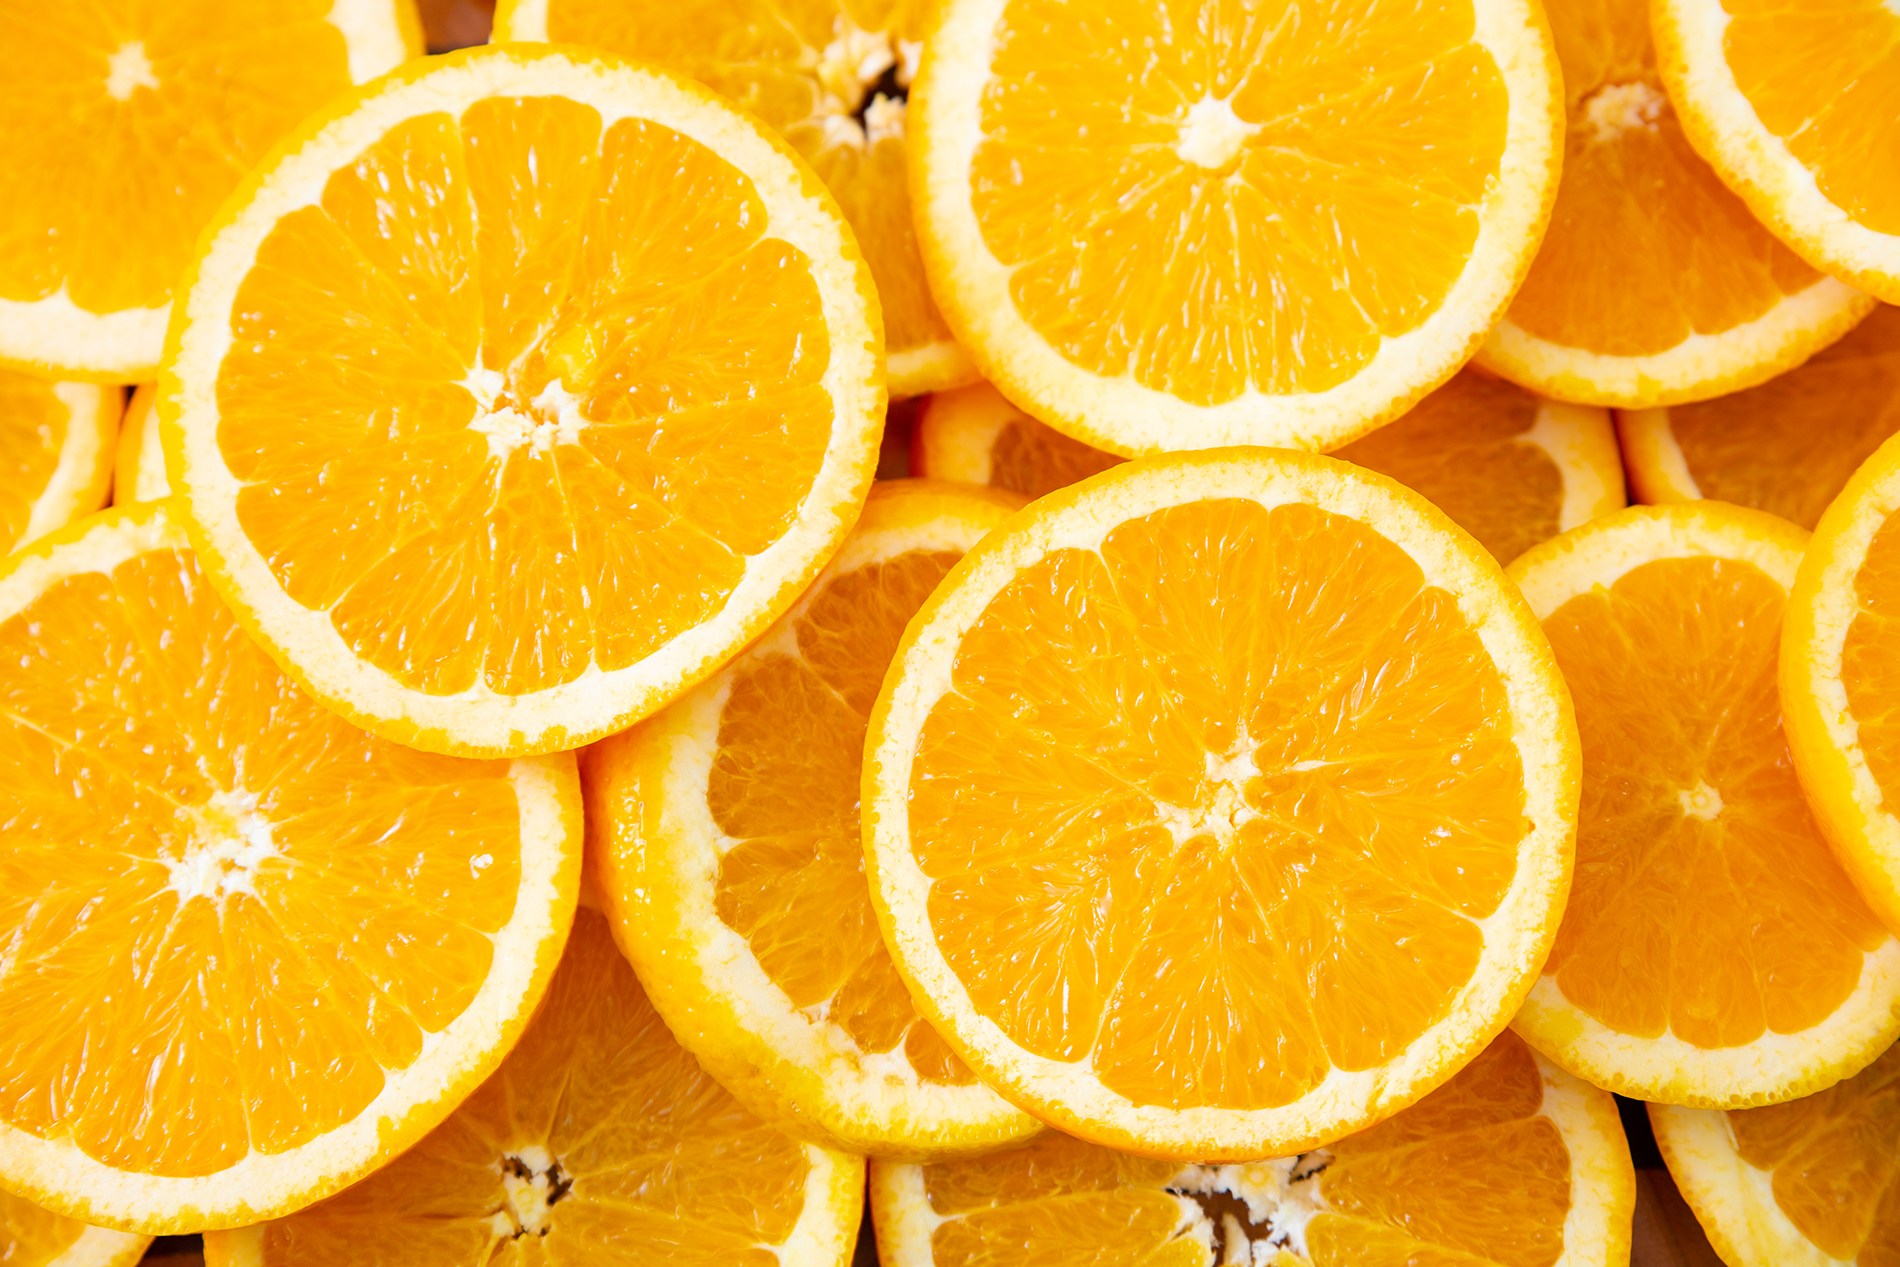 olejek eteryczny pomarańczowy